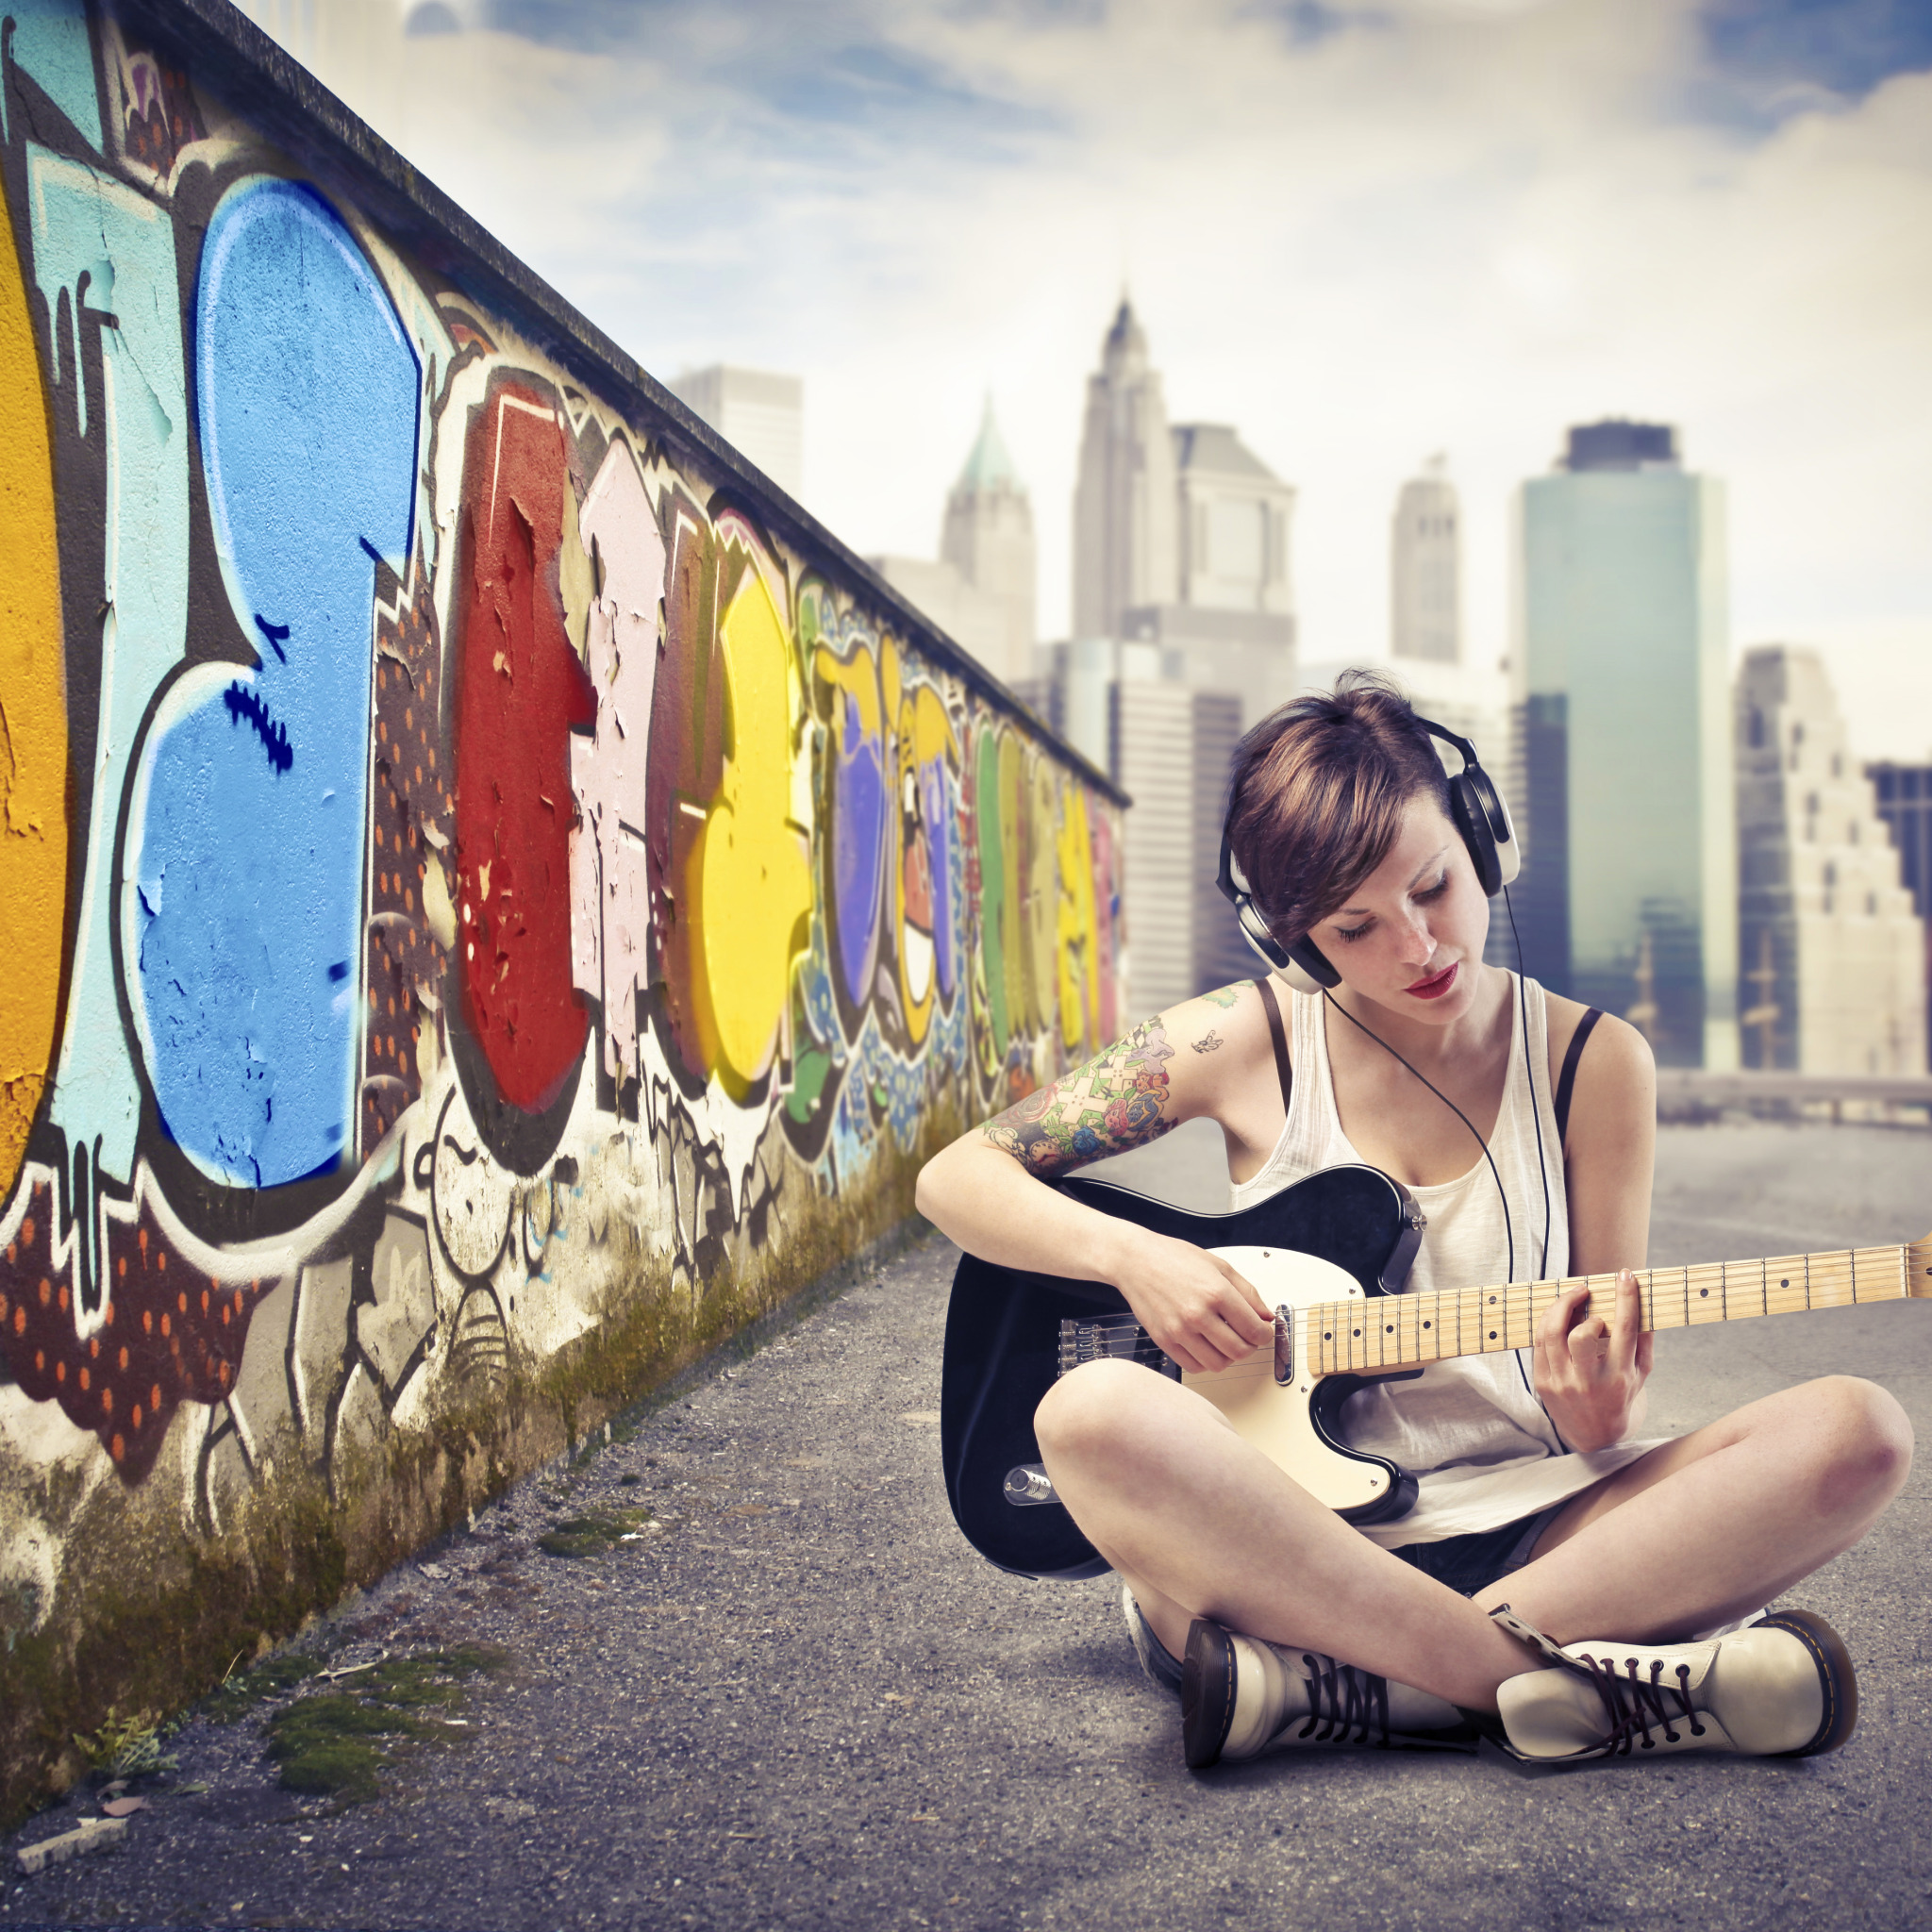 Девушка по городу mp3. Девушка веселая в городе. Девушка с гитарой в городе. Фотосессия у стены с граффити. Городская фотосессия у стены.